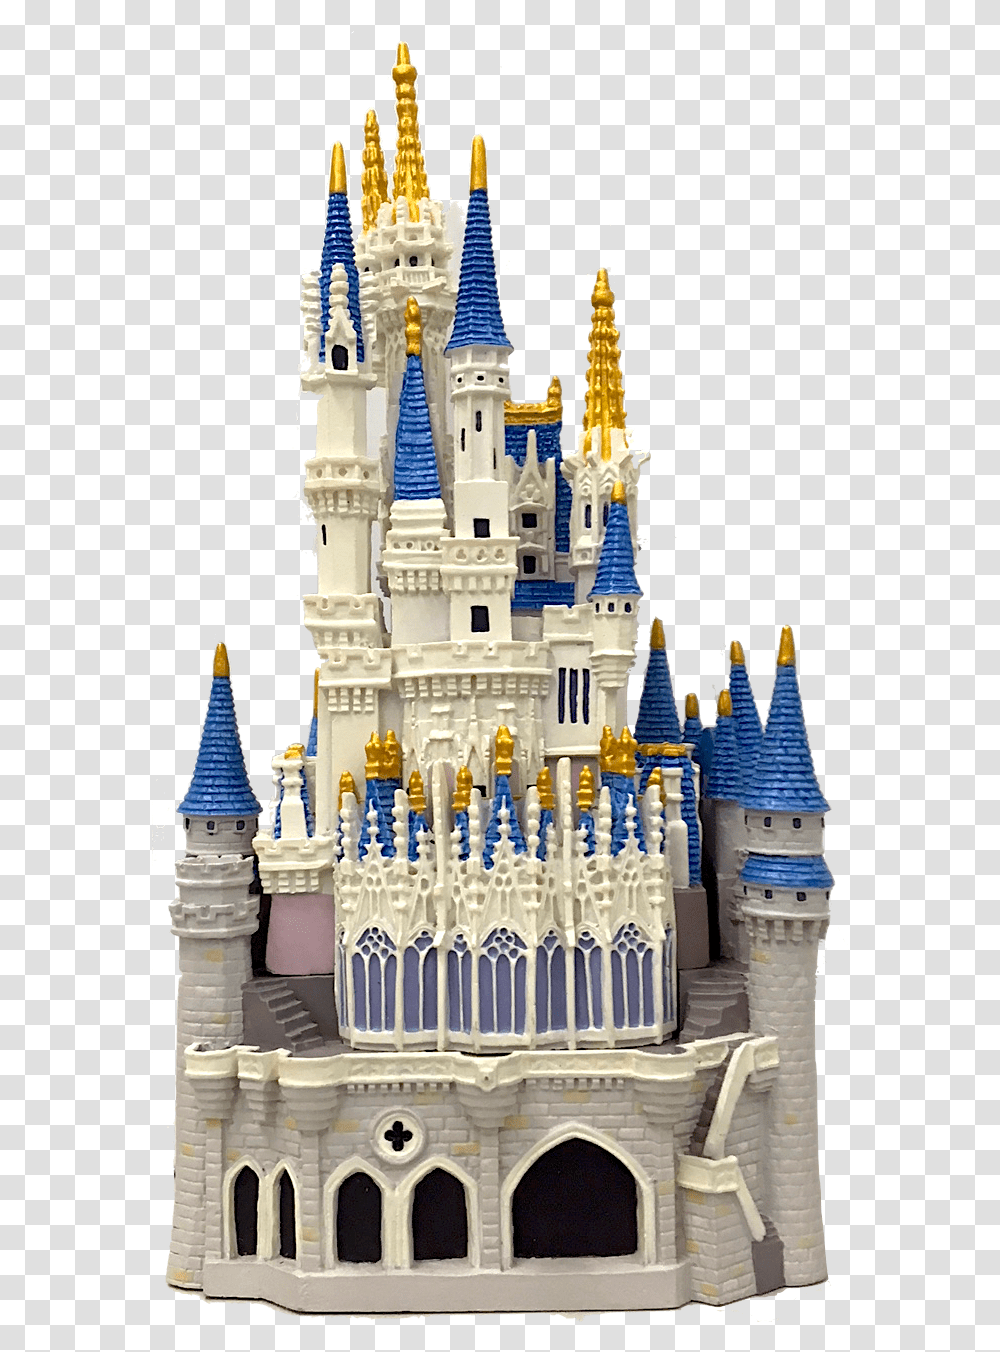 Holinail Group Walt Disney World, Architecture, Building, Castle, Spire Transparent Png